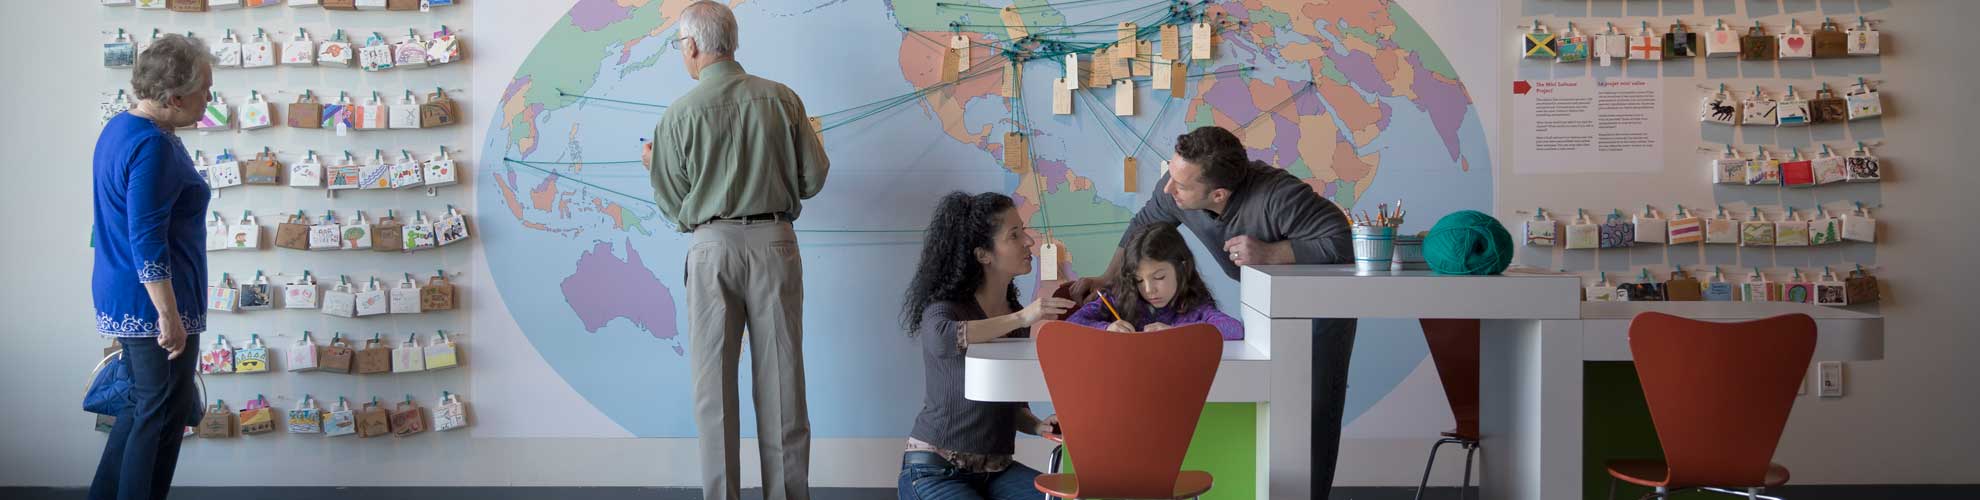 Cinq adultes et un enfant interagissent avec l’exposition, qui présente une carte du monde avec des étiquettes de bagage.